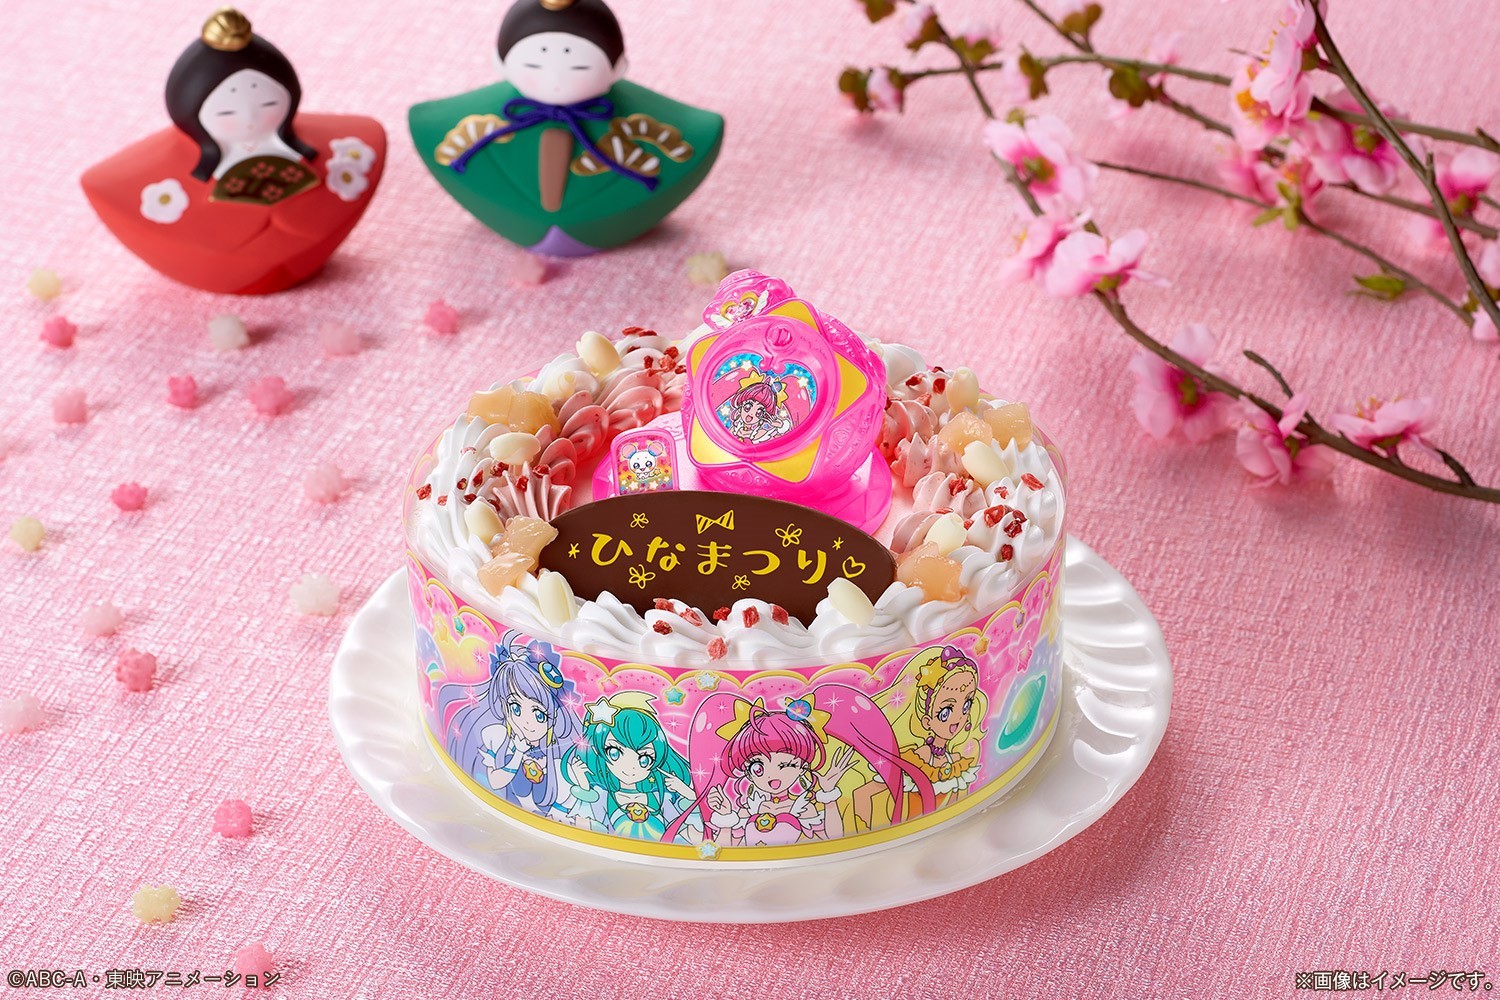 ひなまつりは新プリキュアのキャラデコケーキでお祝い！
2月スタート「スター☆トゥインクルプリキュア」のケーキ